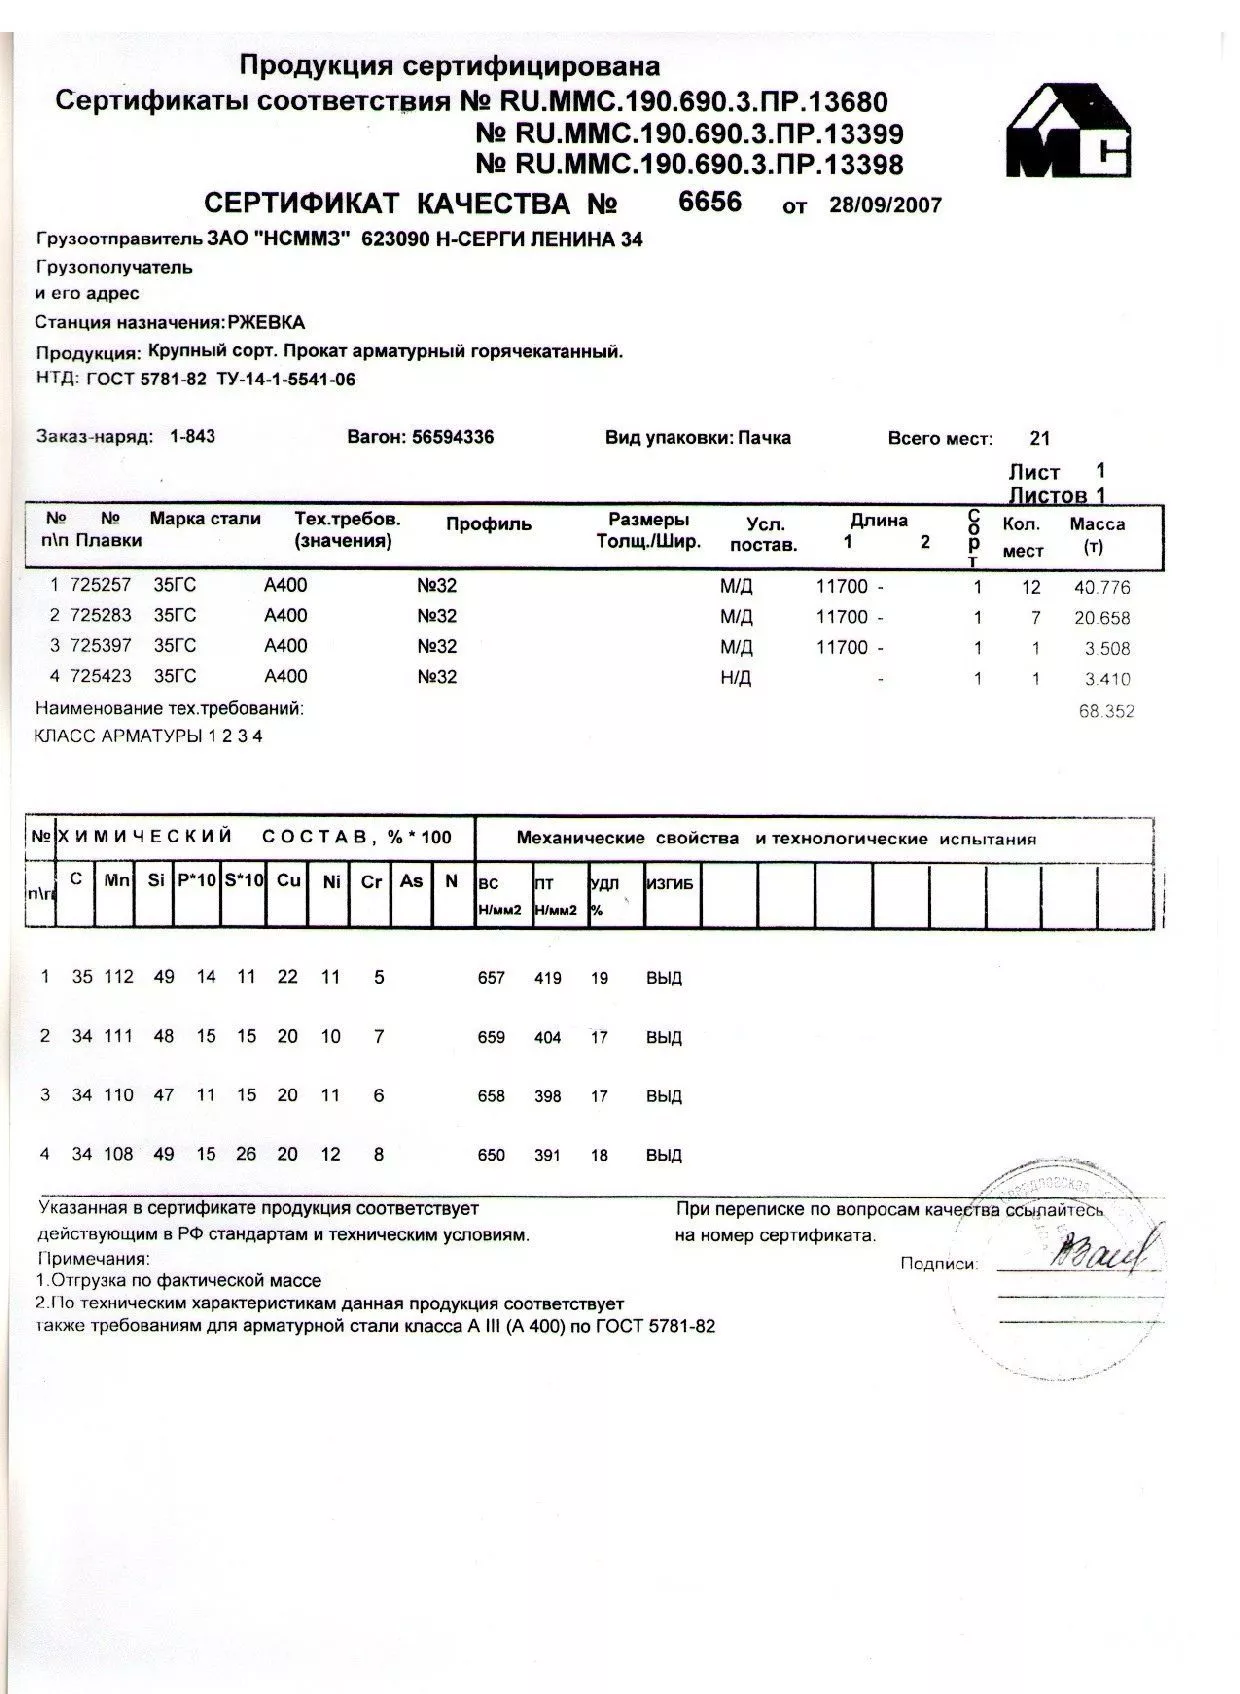 Сертификат на арматуру 32 марки 35ГС от 2007-09